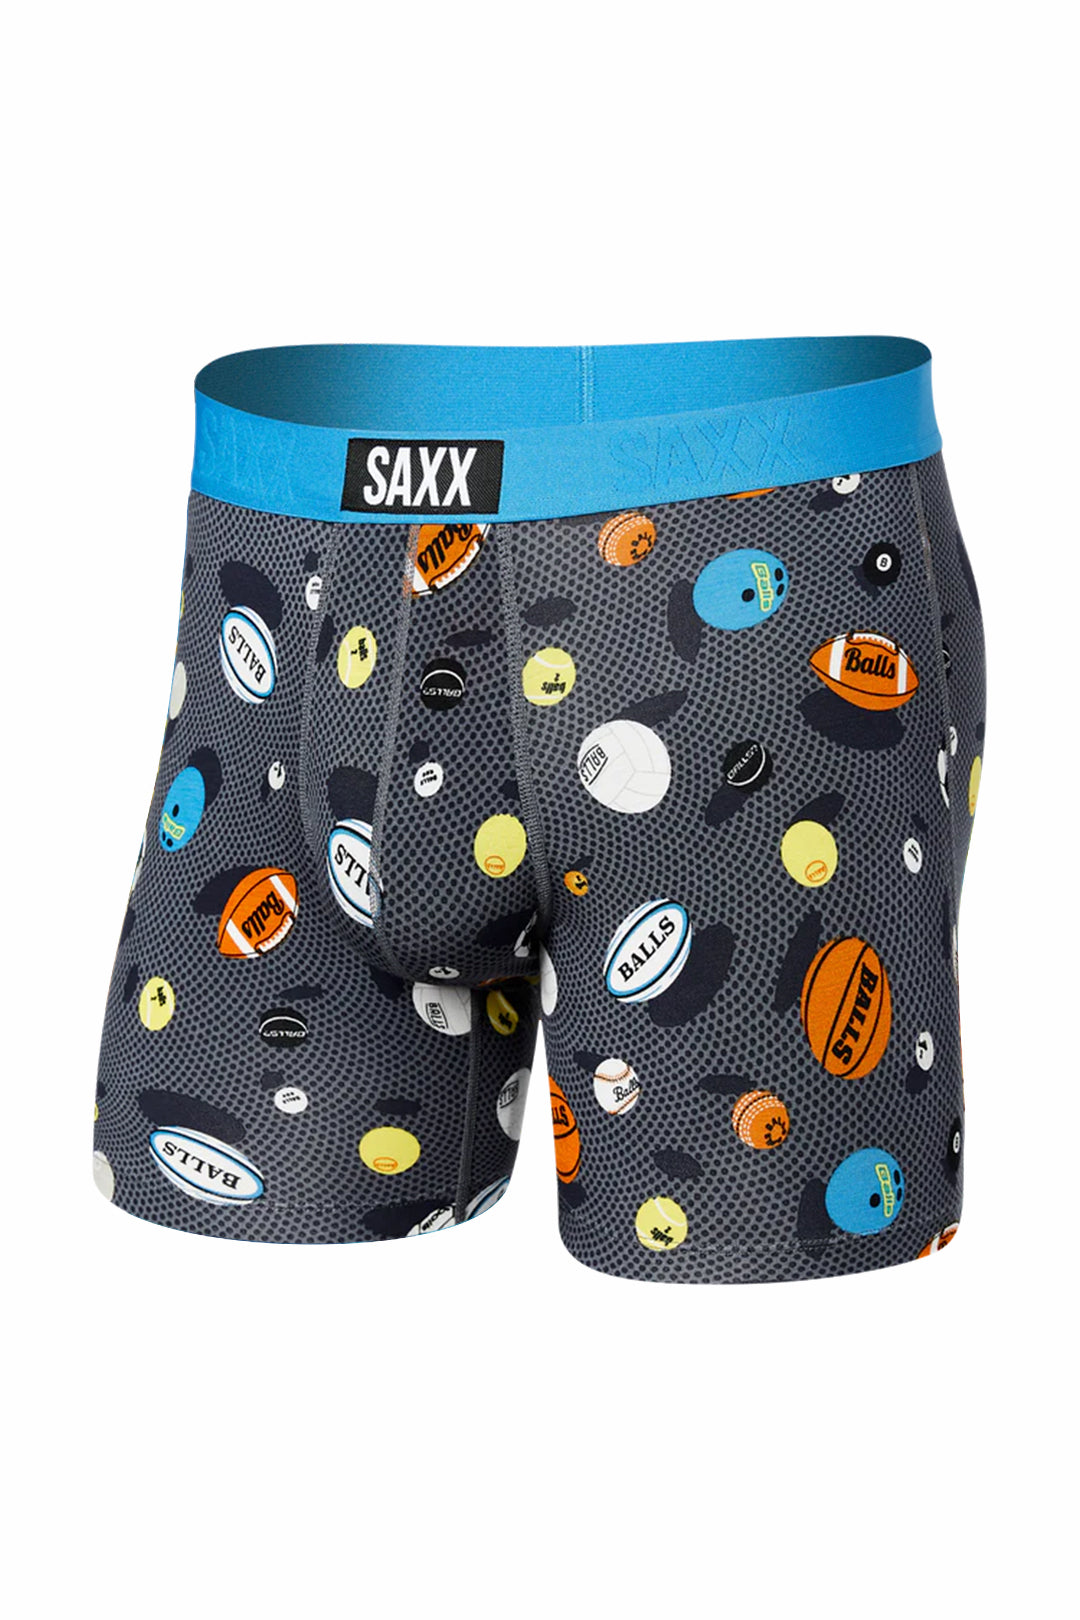 Saxx Sports Boxer in Multi color